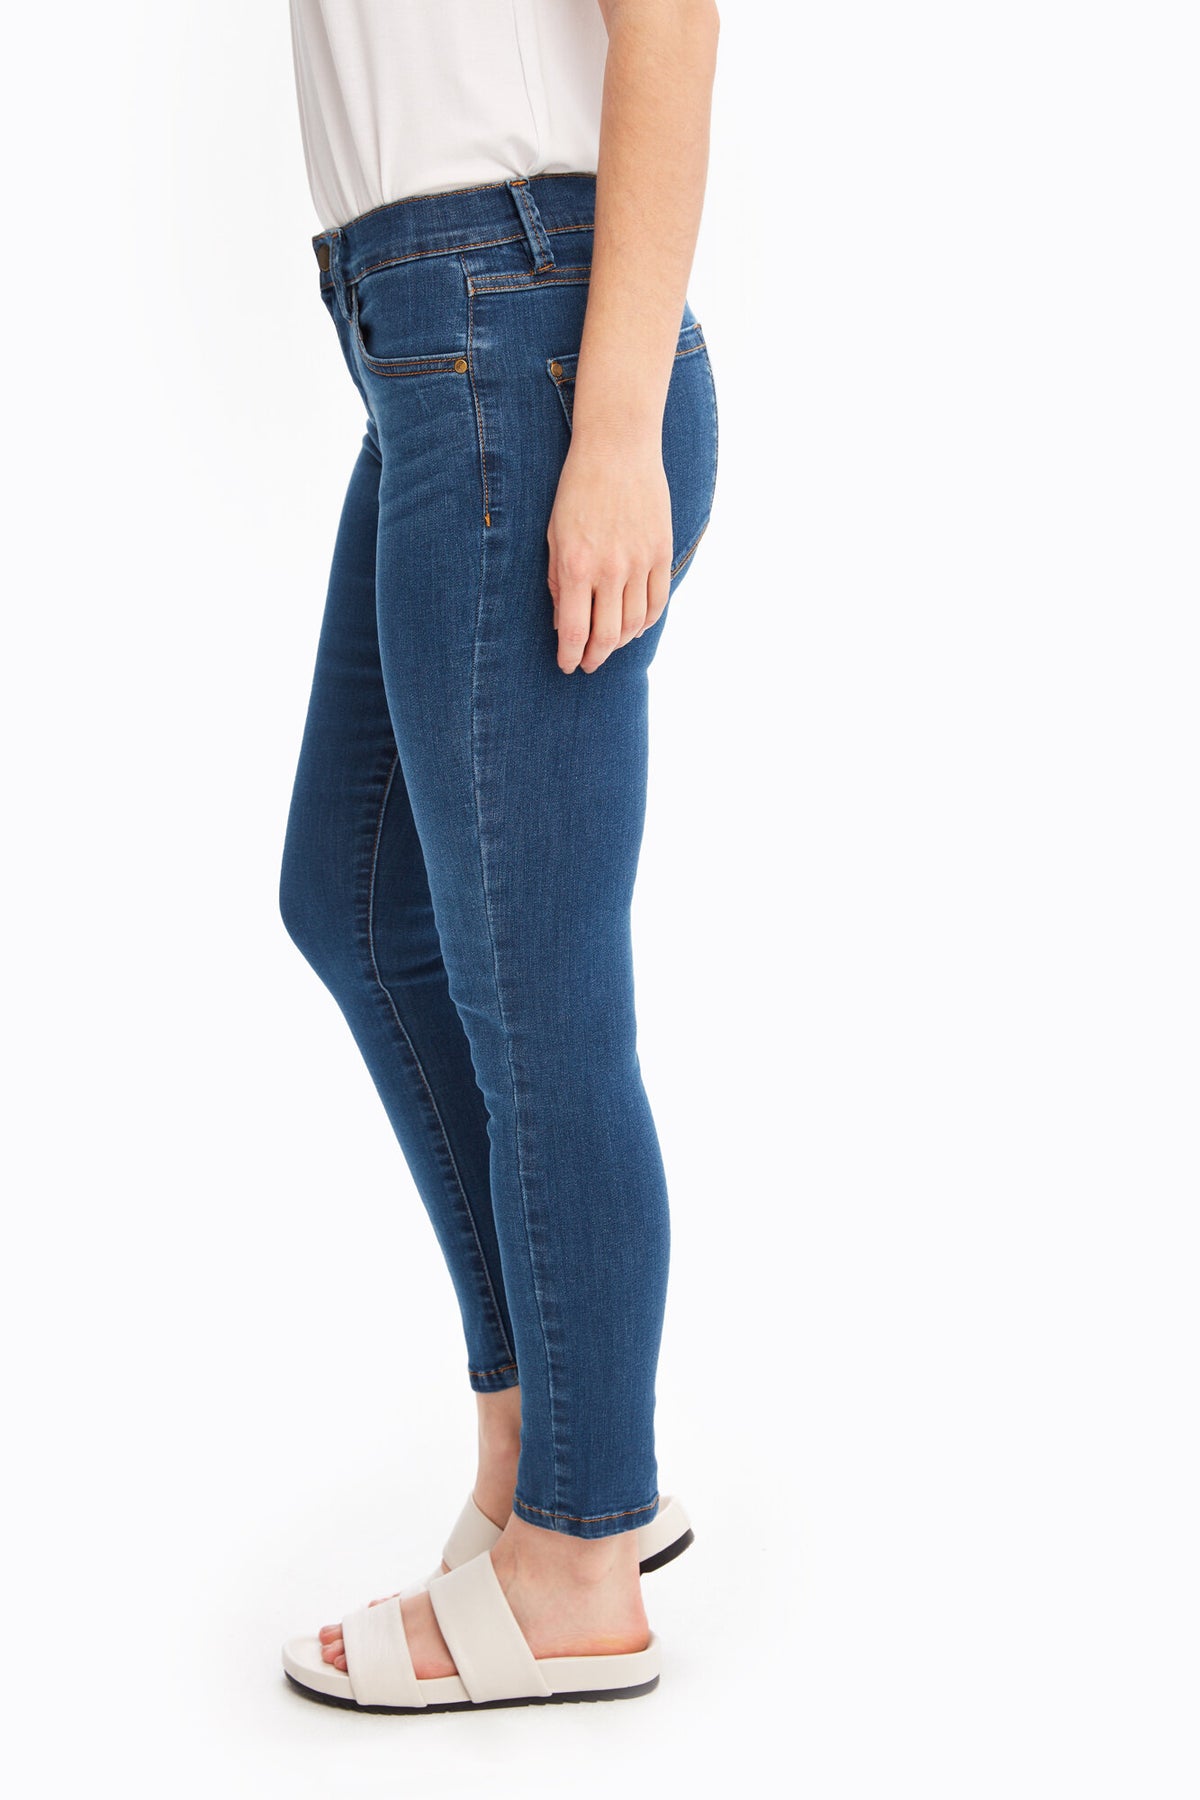 Women's slim 7/8 jeans